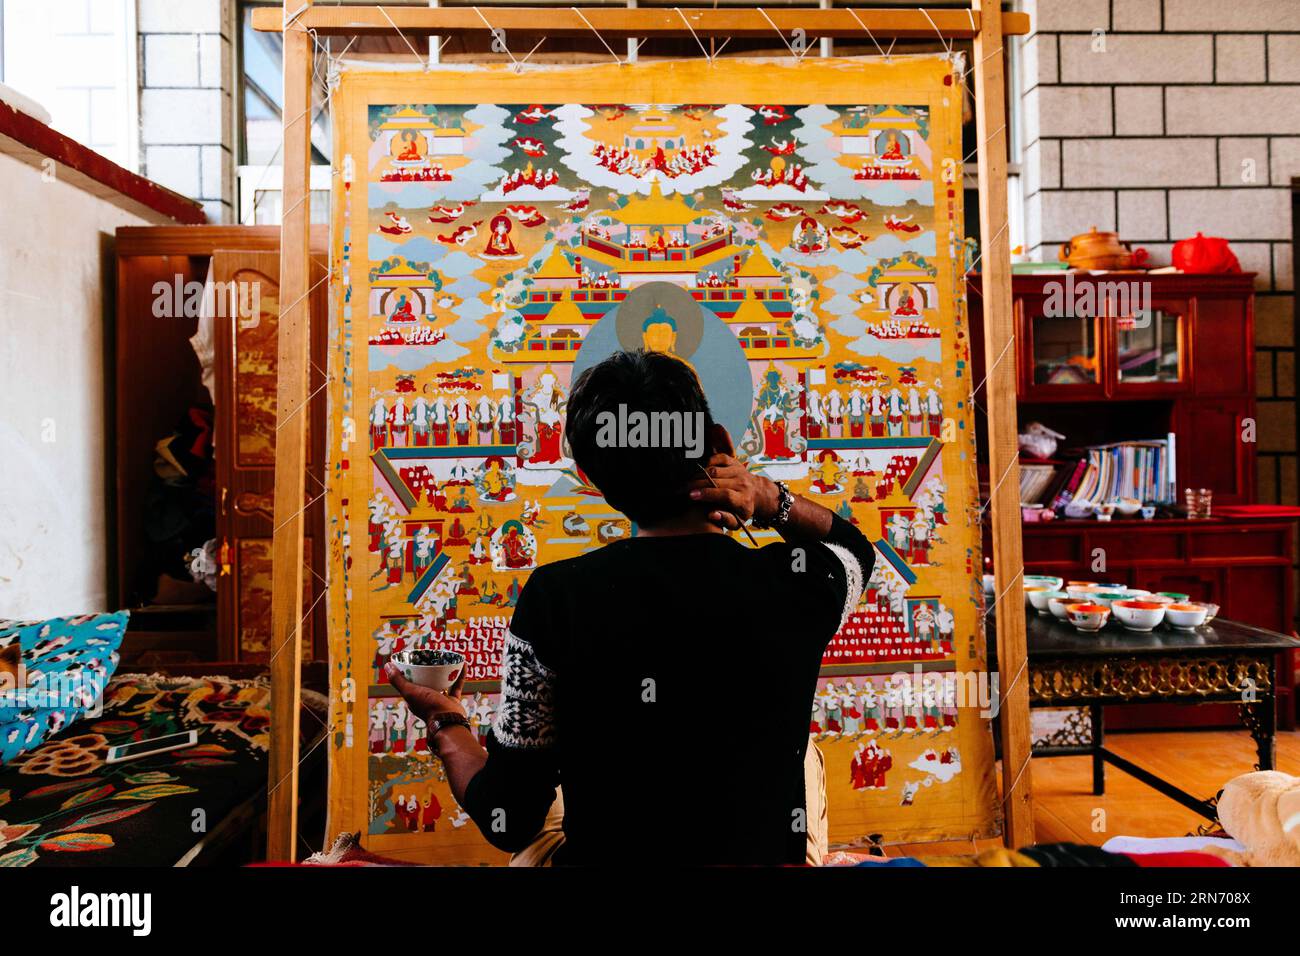 PEMA Wanza streckt sich beim Thangka-Malen in Lhasa, der Hauptstadt der autonomen Region Tibet im Südwesten Chinas, am 8. August 2015. Thangka, Musik, Film. Man kann sich nie vorstellen, wie diese scheinbar irrelevanten Elemente zusammenkommen, bis man die 21-jährige Pema Wanza trifft. Thangka, ein tibetisches Rollbanner, das verschiedene Arten von Inhalten darstellt, ist in jedem Klosterfamilienhaus in der Autonomen Region Tibet zu sehen und ist in den letzten Jahren zu einer wertvollen Sammlung geworden. Wanza begann mit elf Jahren Thangka zu zeichnen. Nach dem Abschluss der Grundschule entschied er sich, Thangka-Drawi zu machen Stockfoto